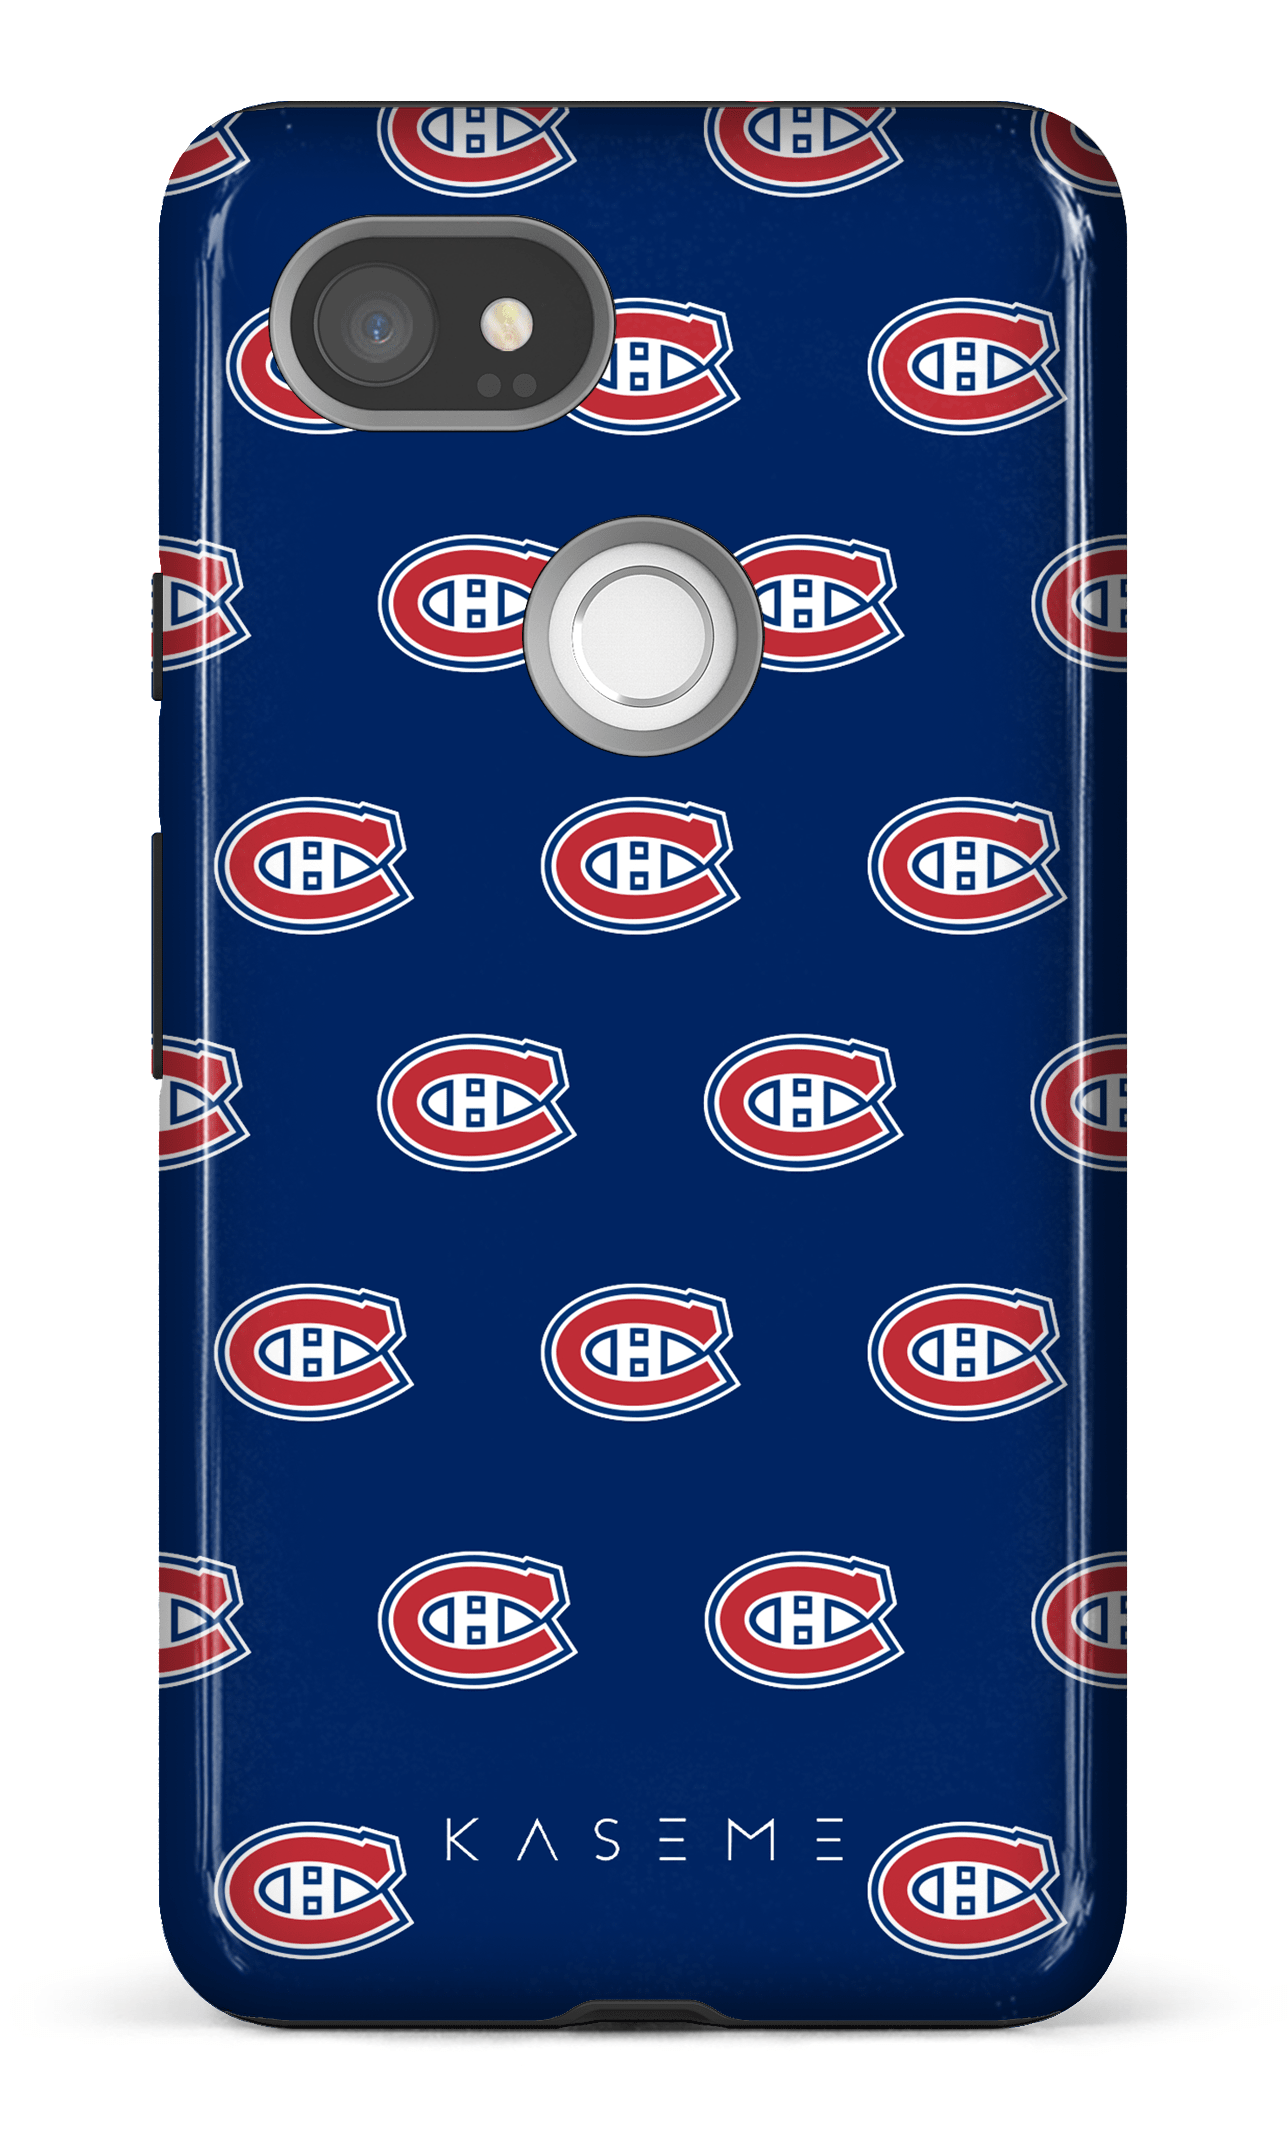 Canadiens Bleu - Google Pixel 2 XL